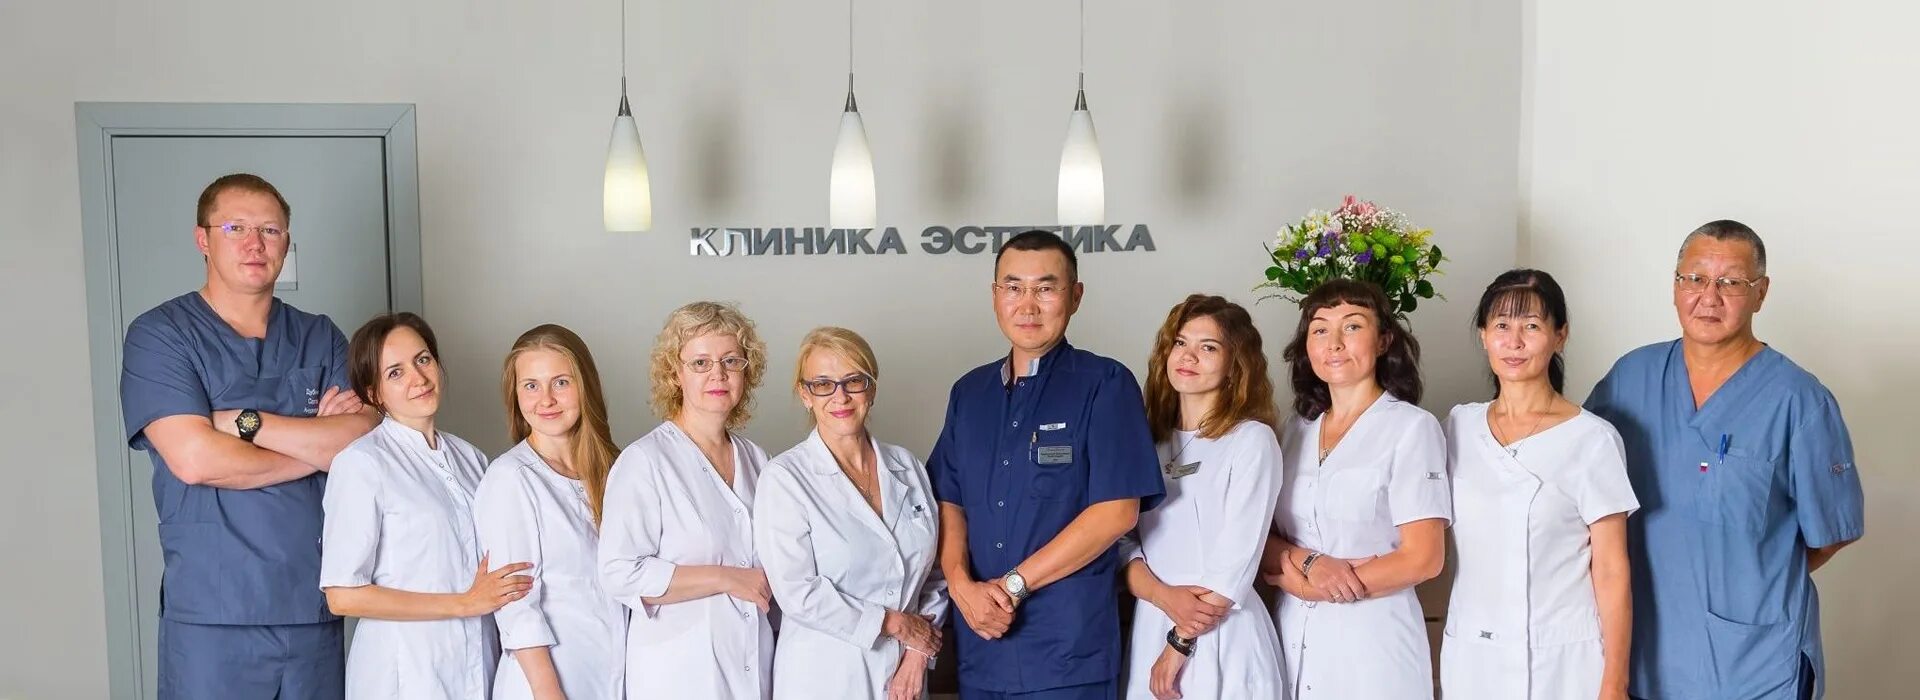 Косметология и пластическая хирургия екатеринбург московская